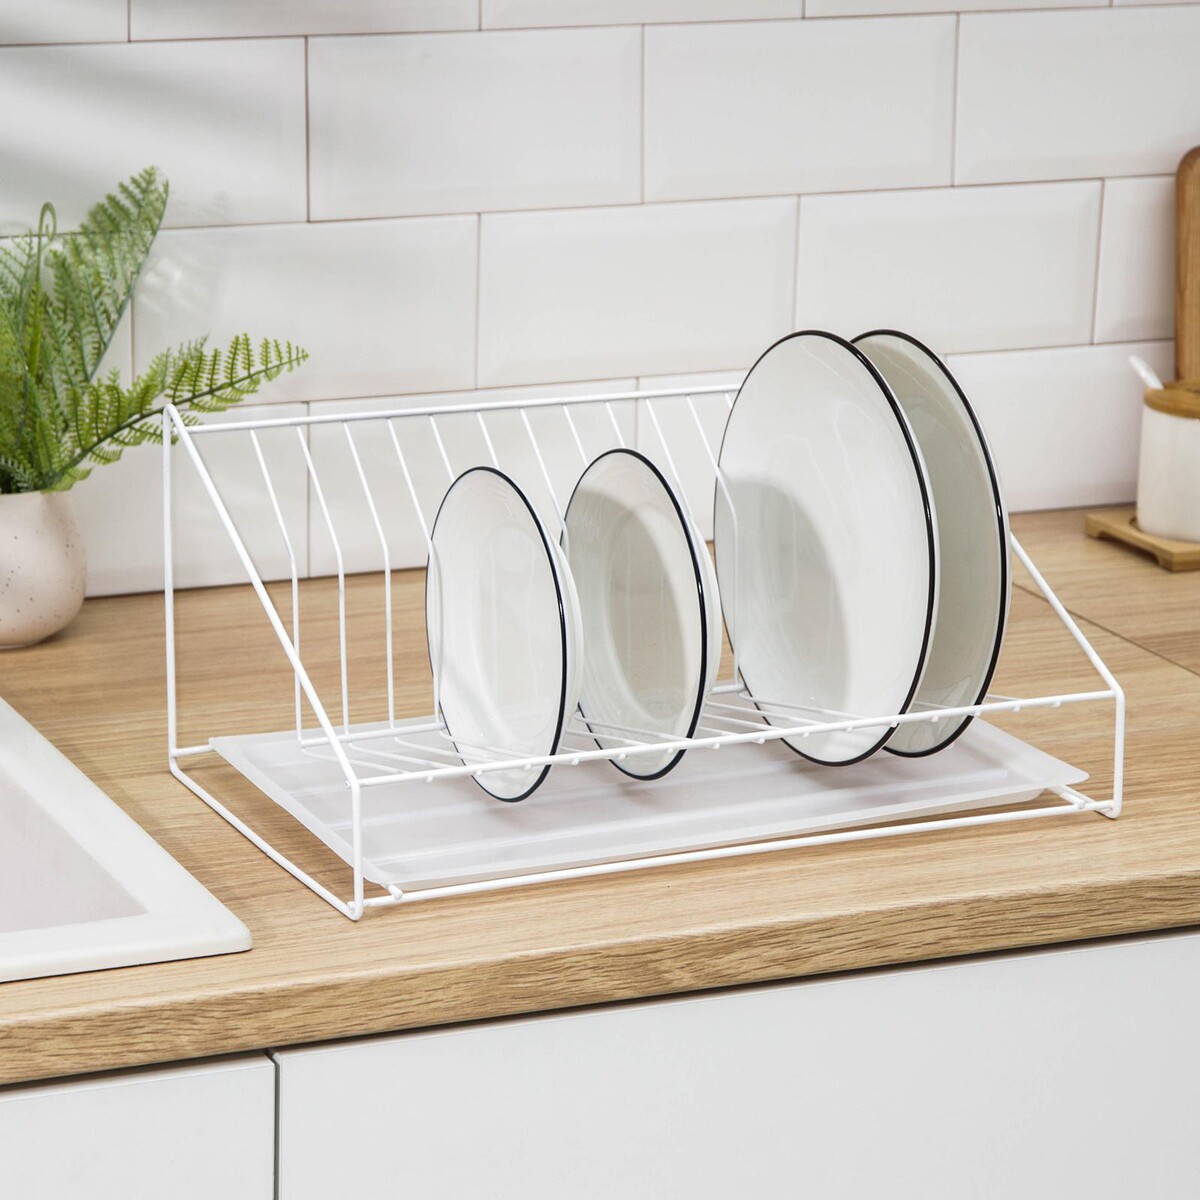 Сушилка для посуды с поддоном, 38×17,5×23,5 см, цвет белый комплект посудосушителей с поддоном для шкафа 40 см 36 5×25 6 см белый